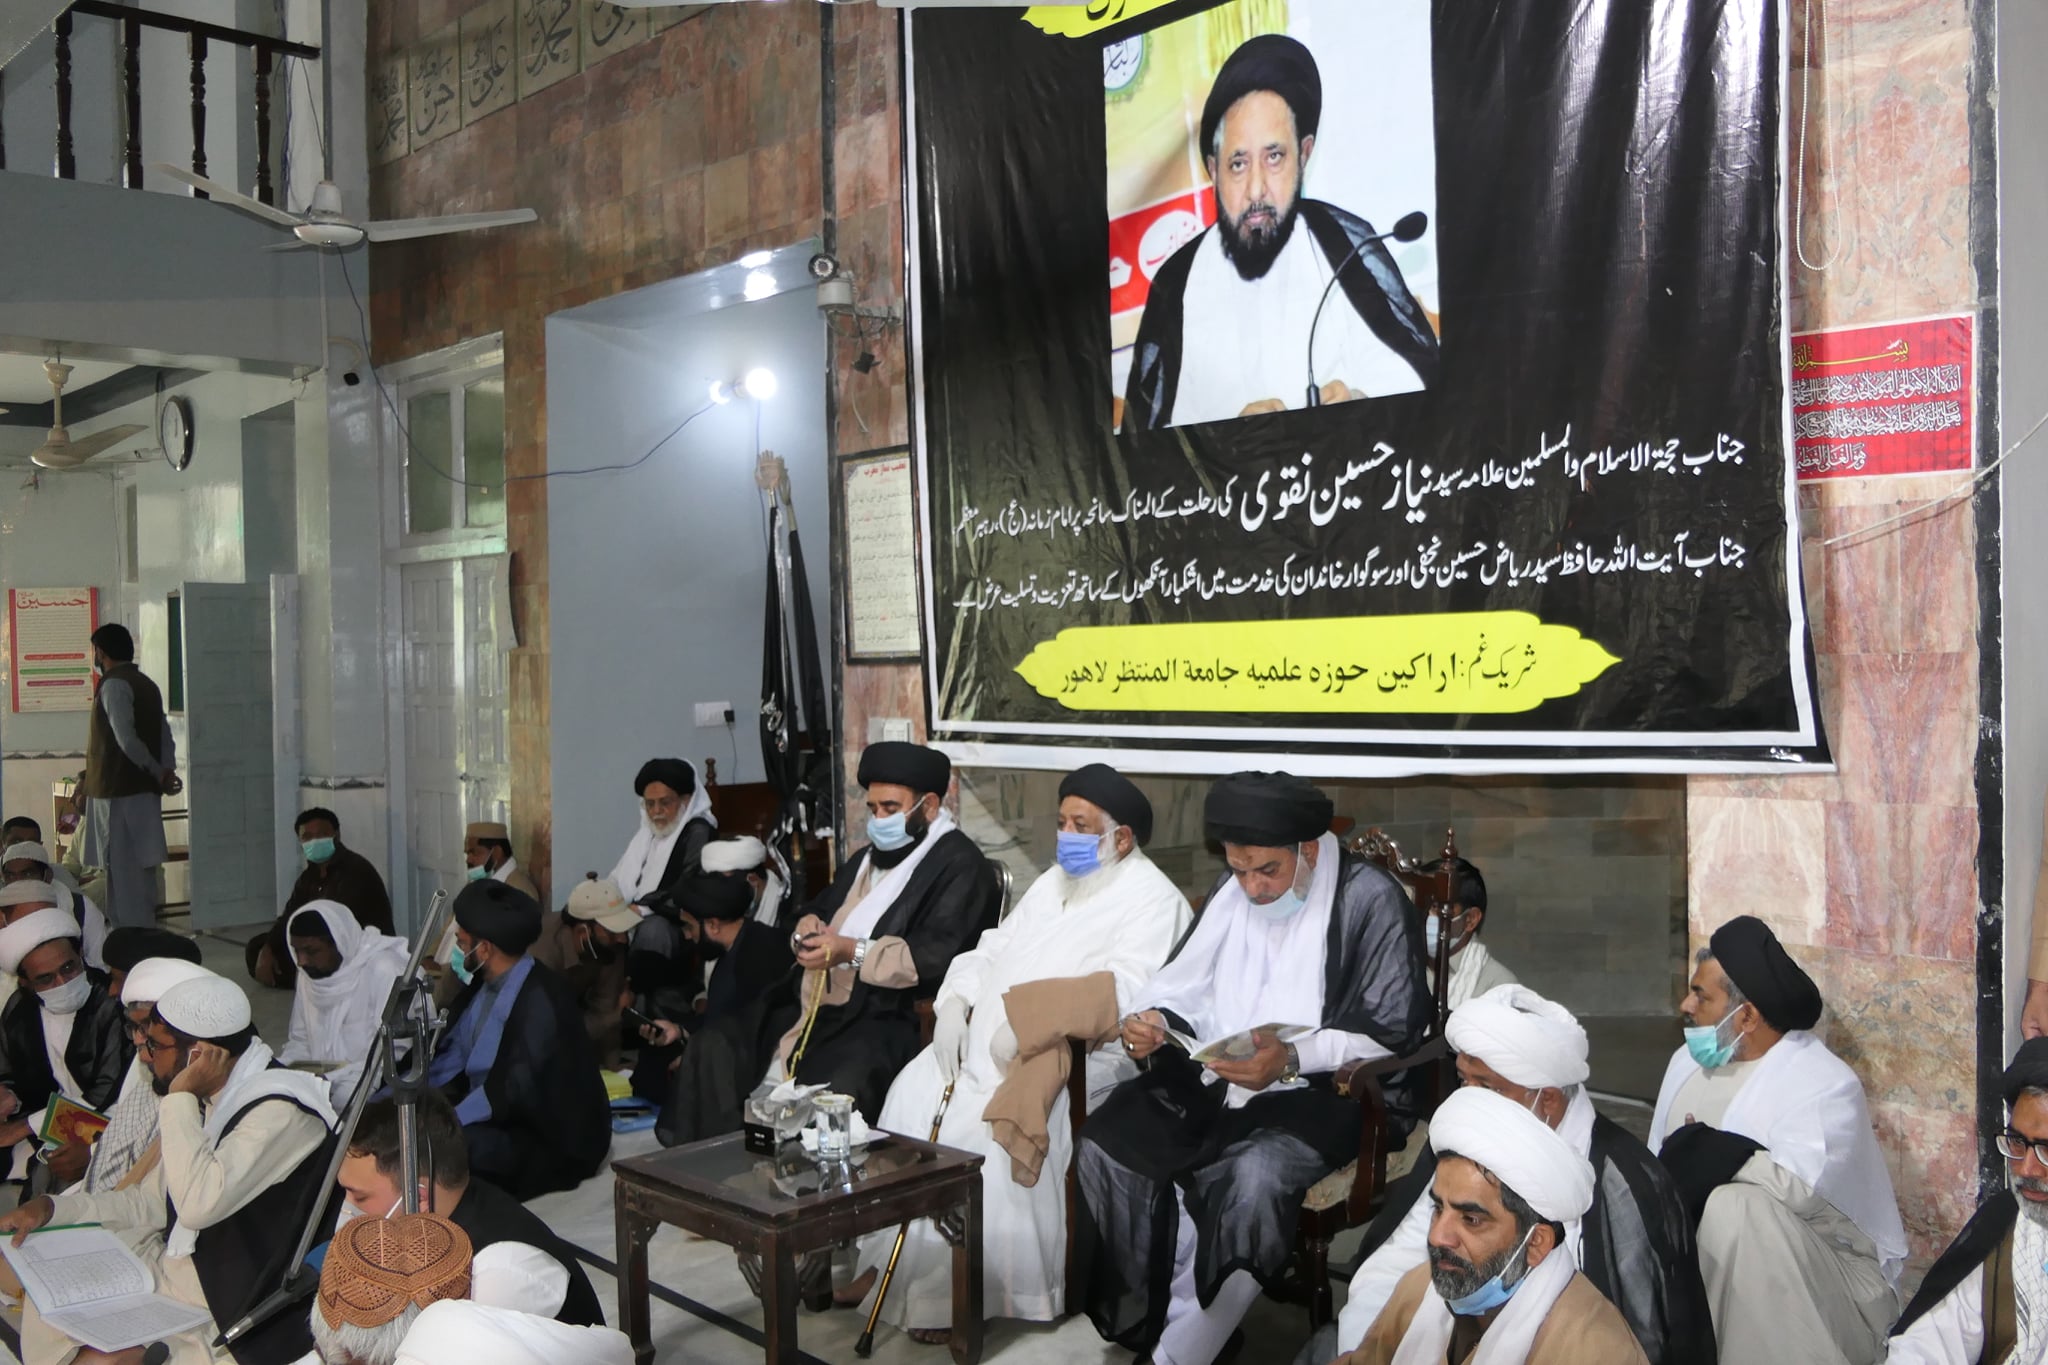 مراسم بزرگداشت روحانی برجسته پاکستان در لاهور برگزار شد+تصاویر